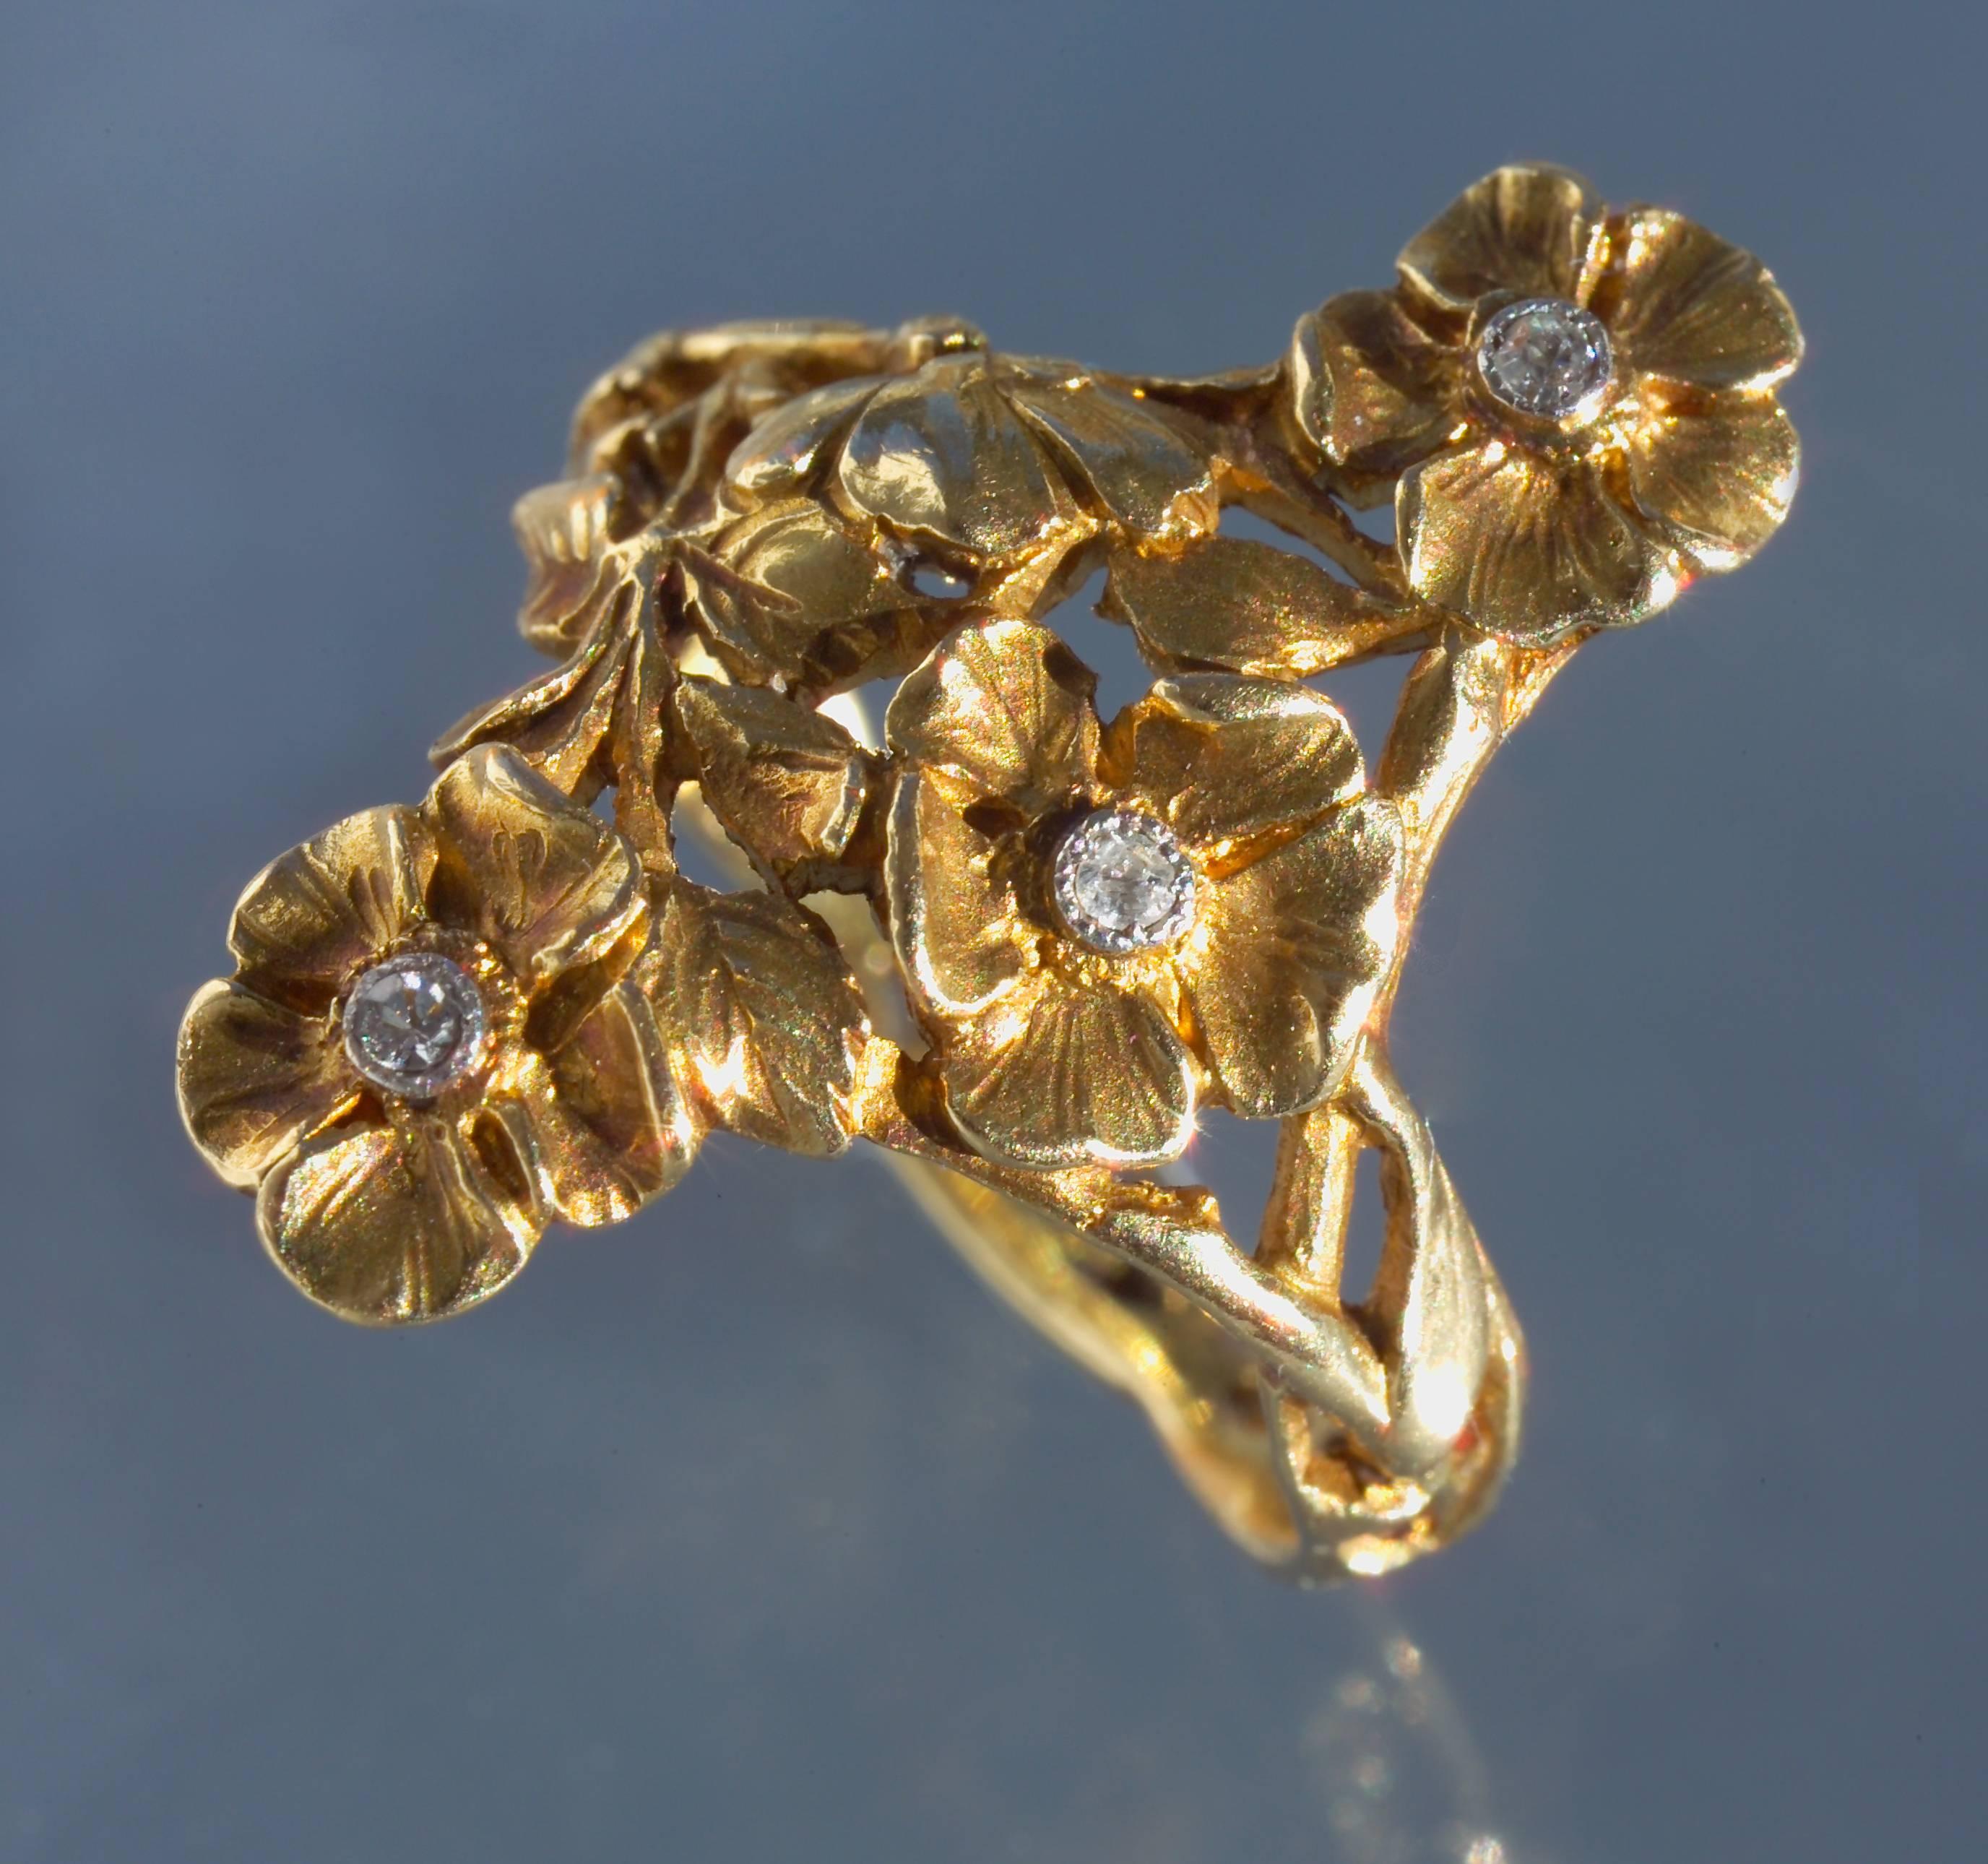 This beautiful Art Nouveau gold & diamond floral ring would make a wonderful engagement ring or Valentine gift.
cf. Kunsthandwerk um 1900, Jugendstil, Art Nouveau, Modern Style Nieuwe Kunst, Hessischen, Landesmuseums, 1965, p.134, pl.182 for